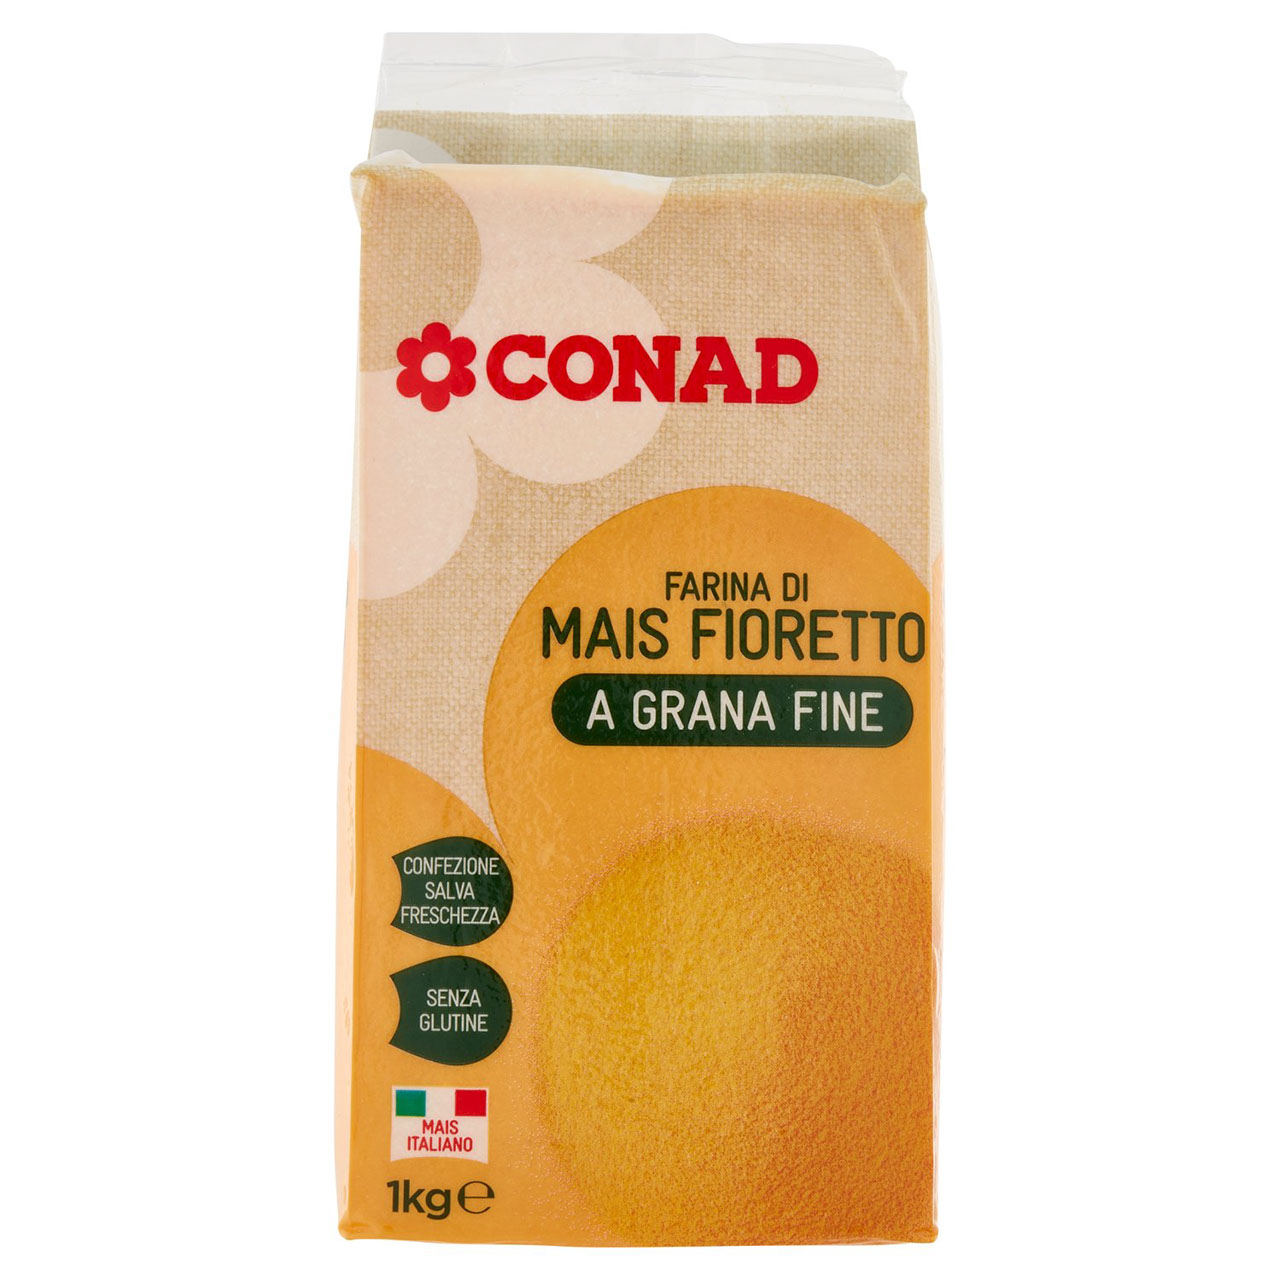 Farina di mais Fioretto a grana fine Conad online